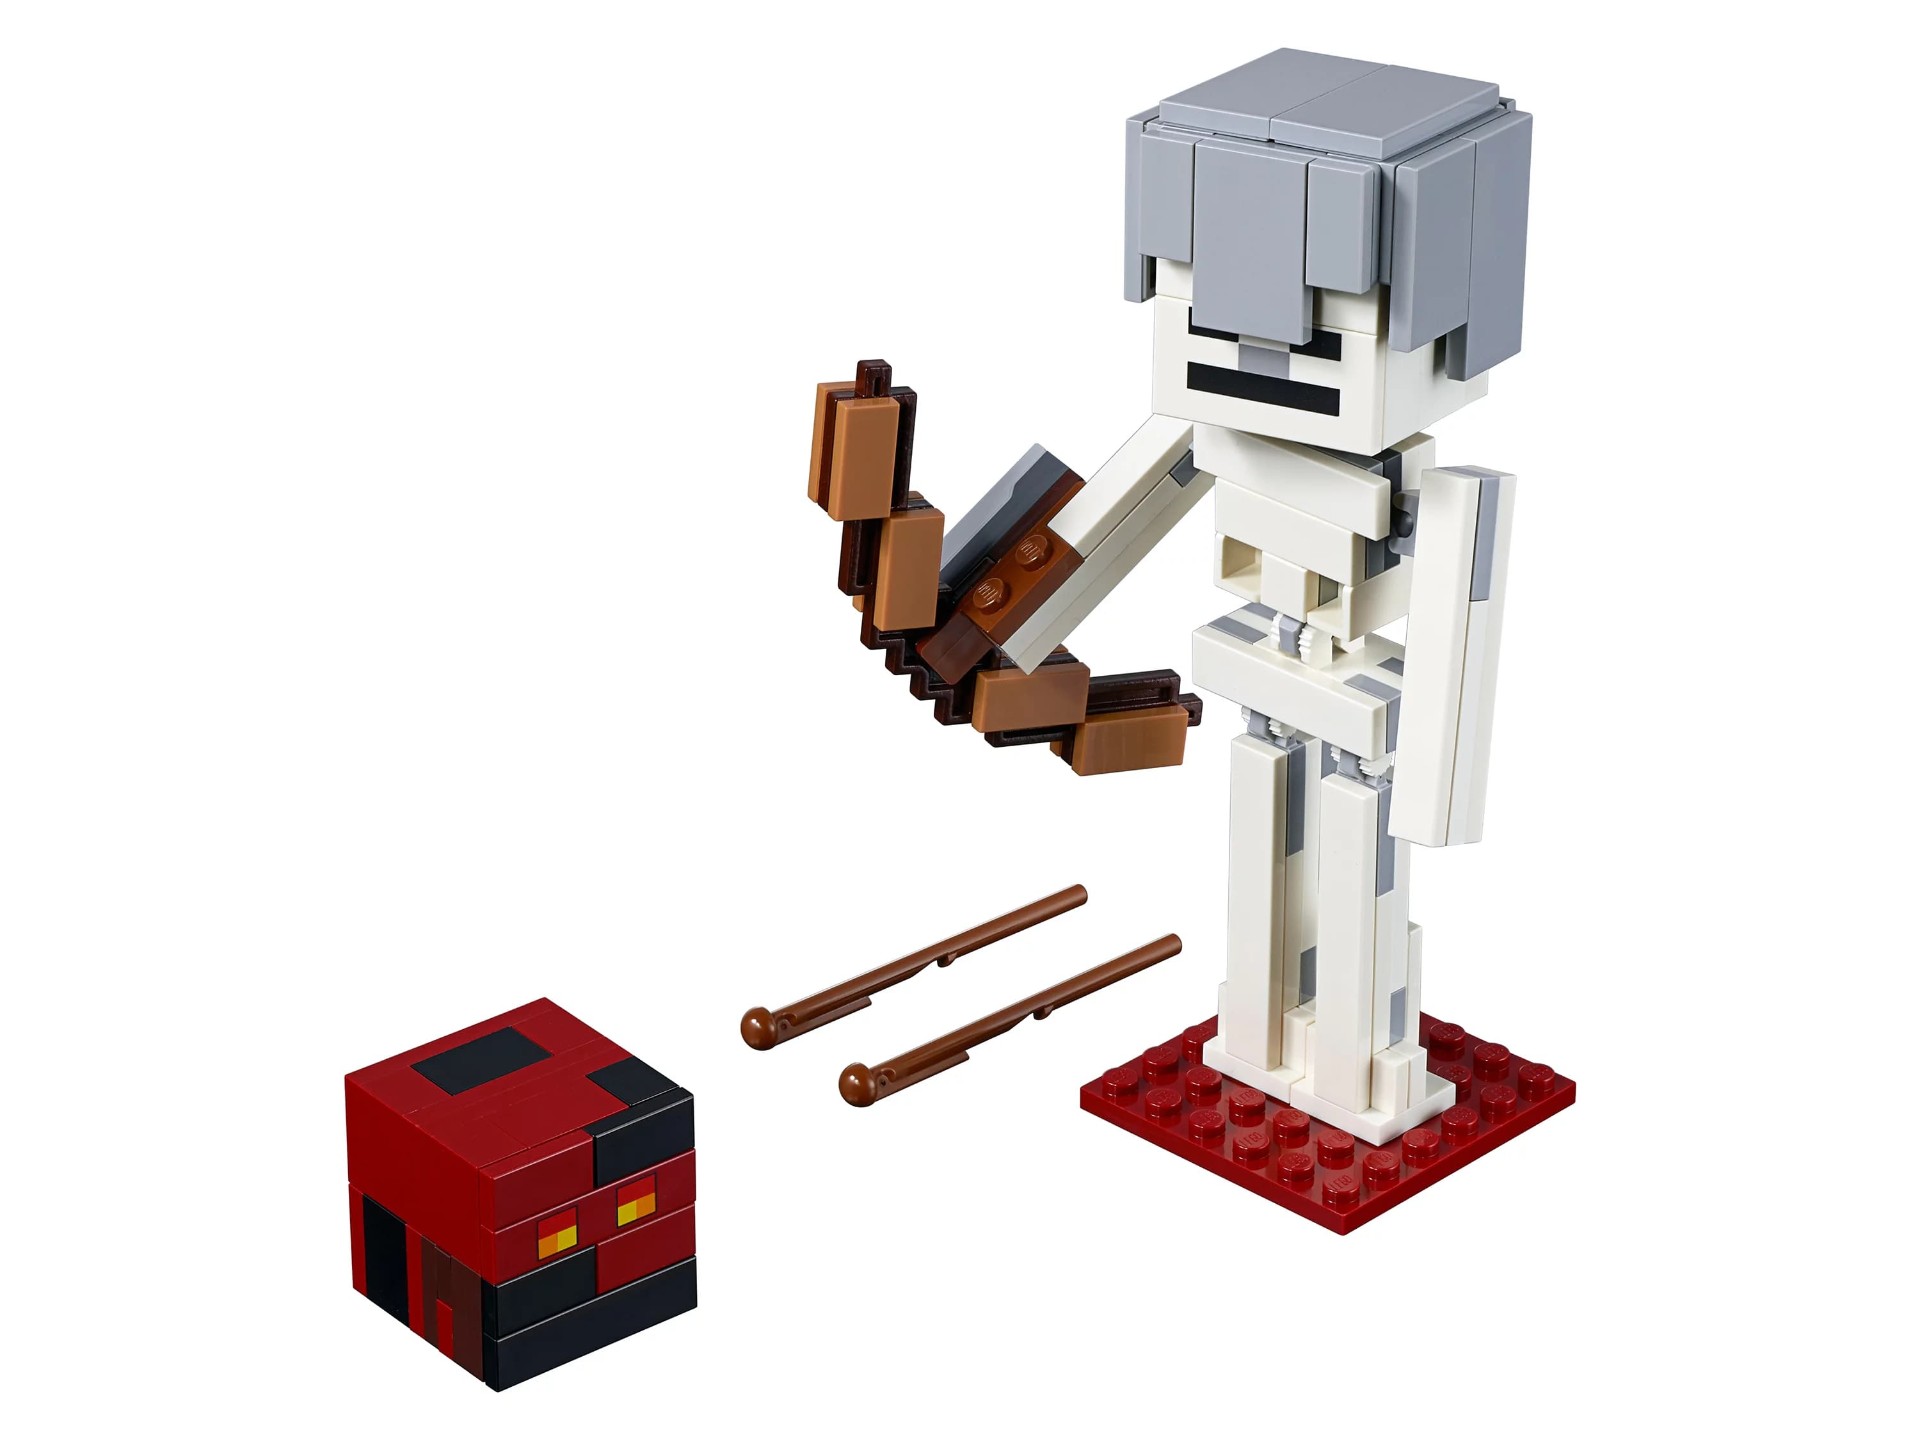 Конструктор Bl «Скелет с кубом магмы» 11168 (Minecraft 21150), 142 детали